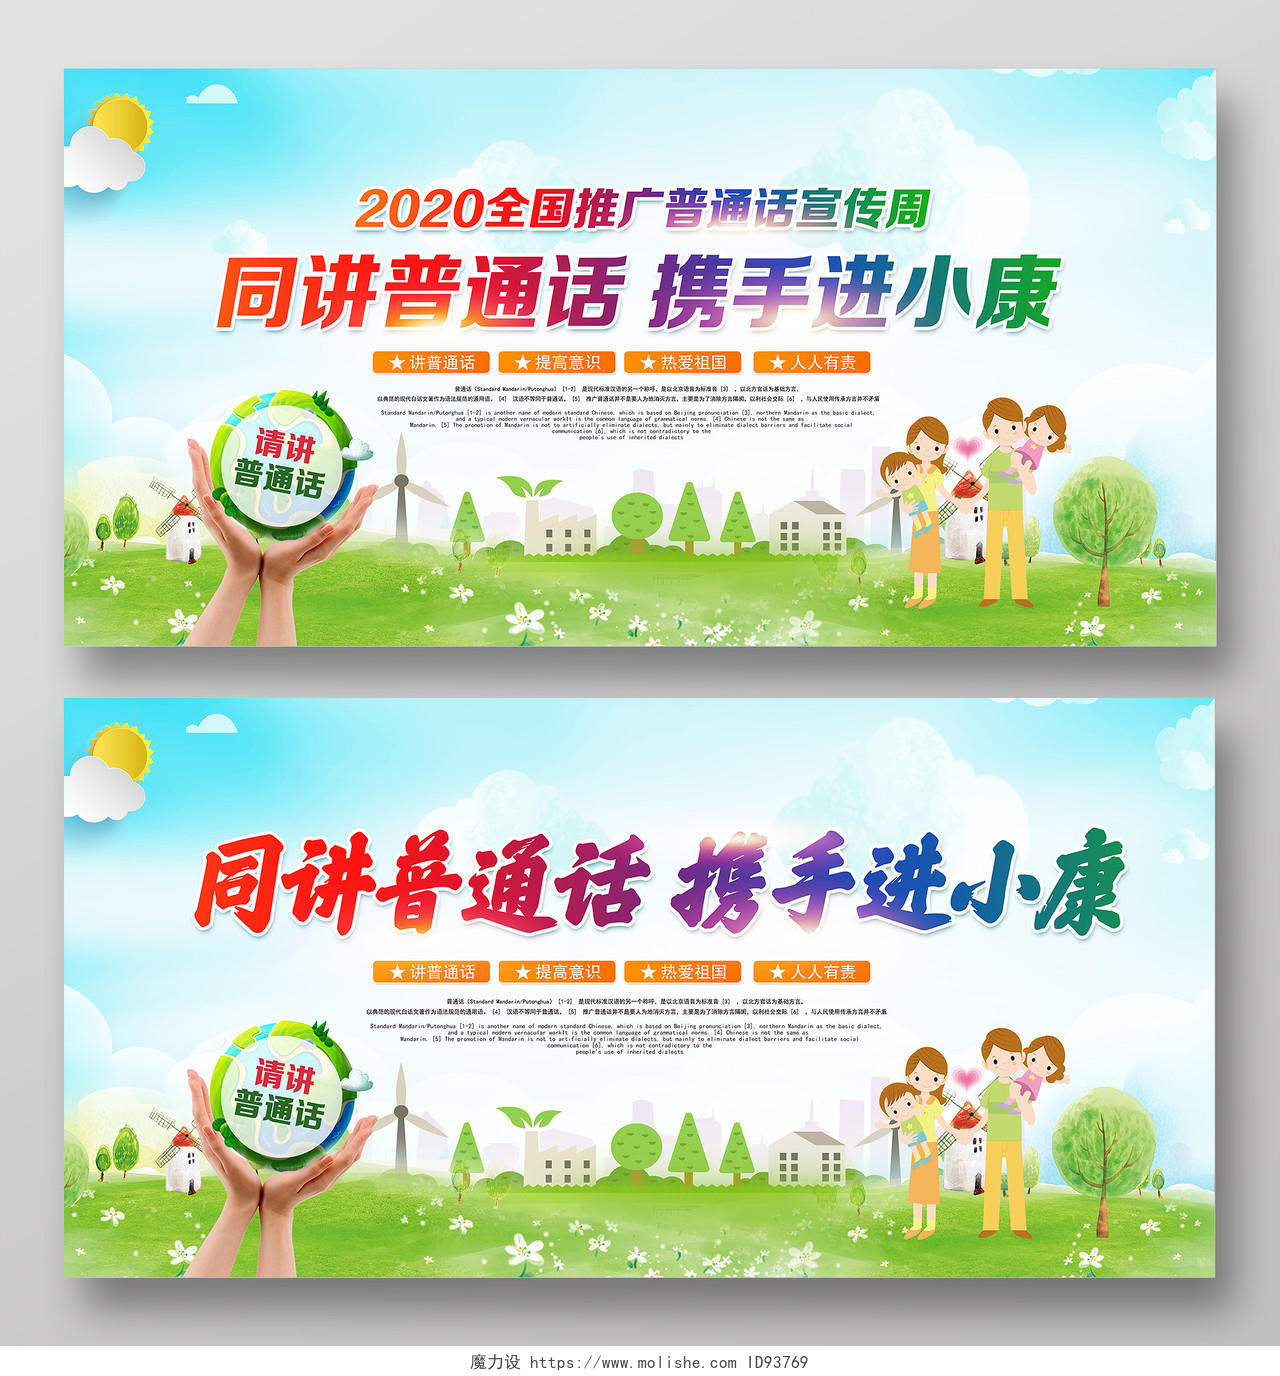 绿色卡通2020年全国推广普通话宣传周展板